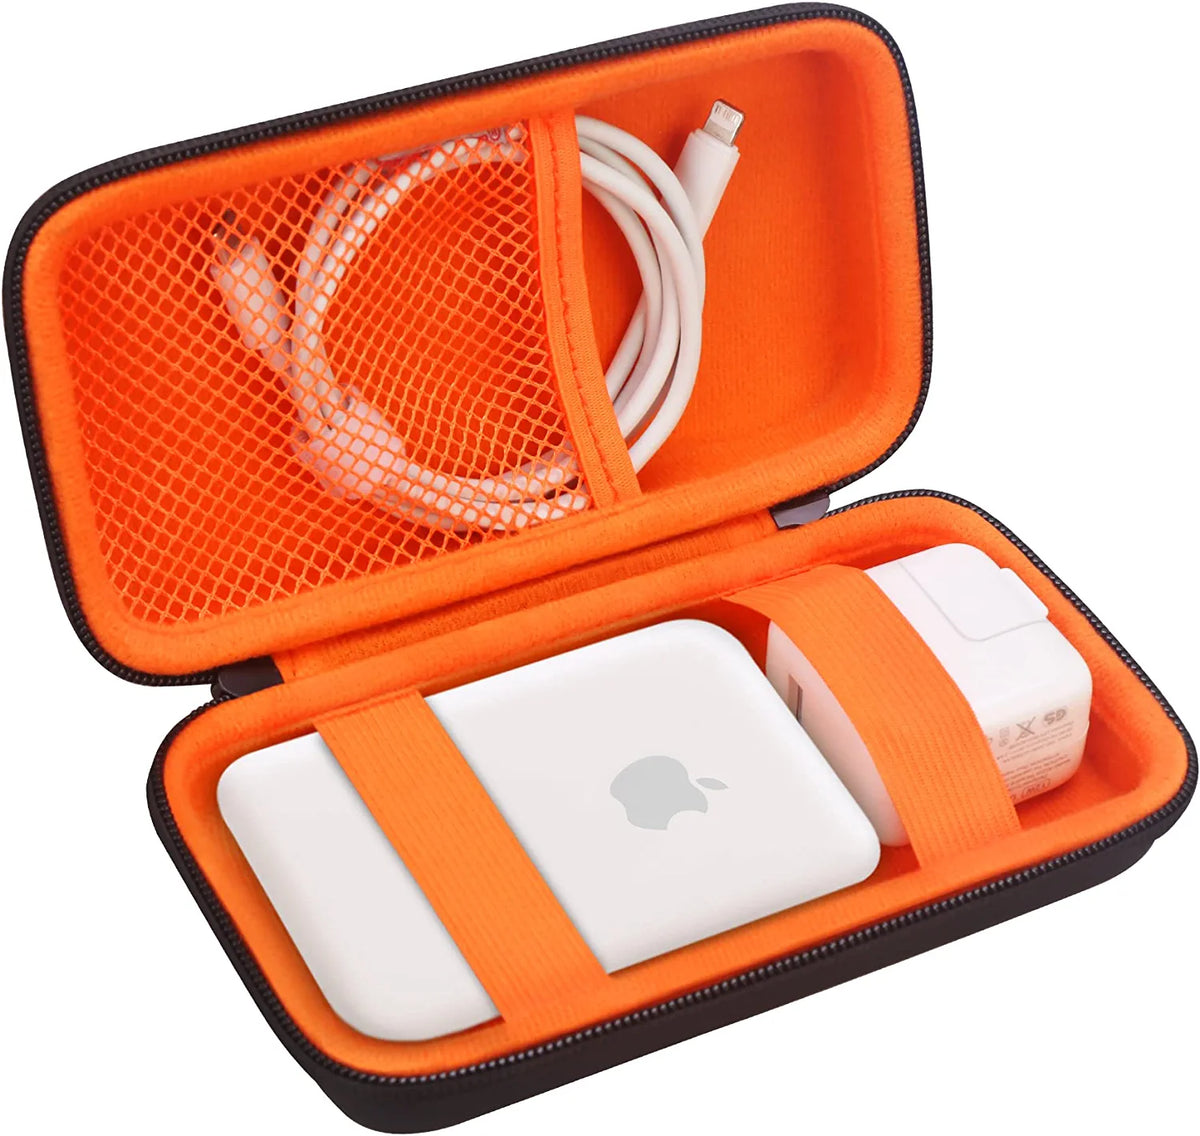 15W magnetischer Auto Wireless Charger für Apple MagSafe - Orange